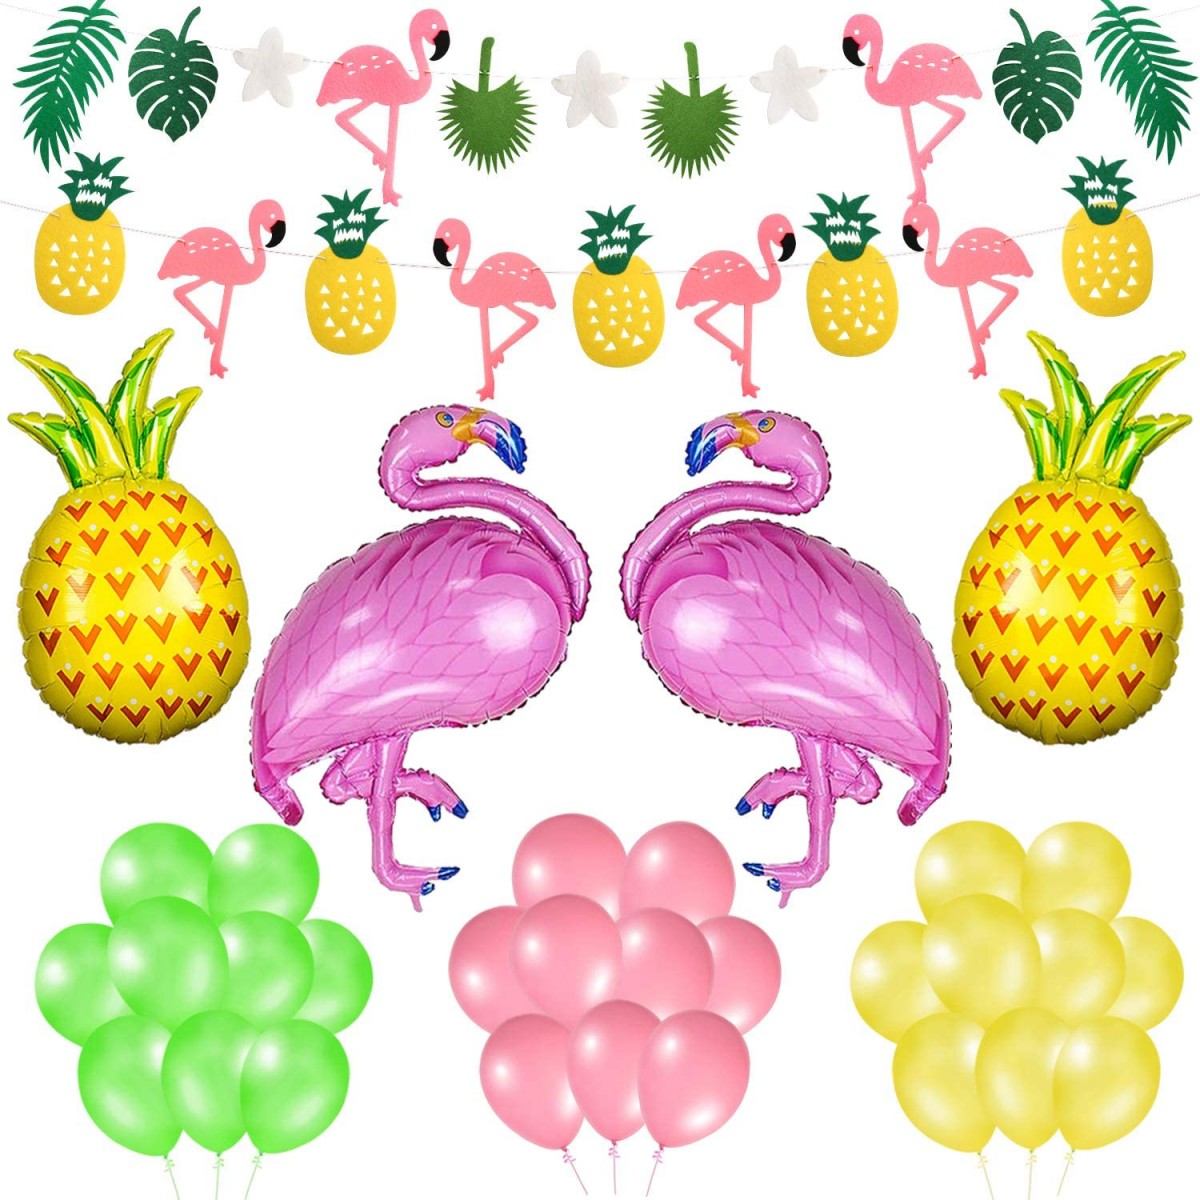 6pcs AerWo Colorful Paper Pineapple Honeycomb Jungle Party Favors Centrotavola da tavola per decorazioni per feste tropicali e forniture per feste a tema hawaiano 